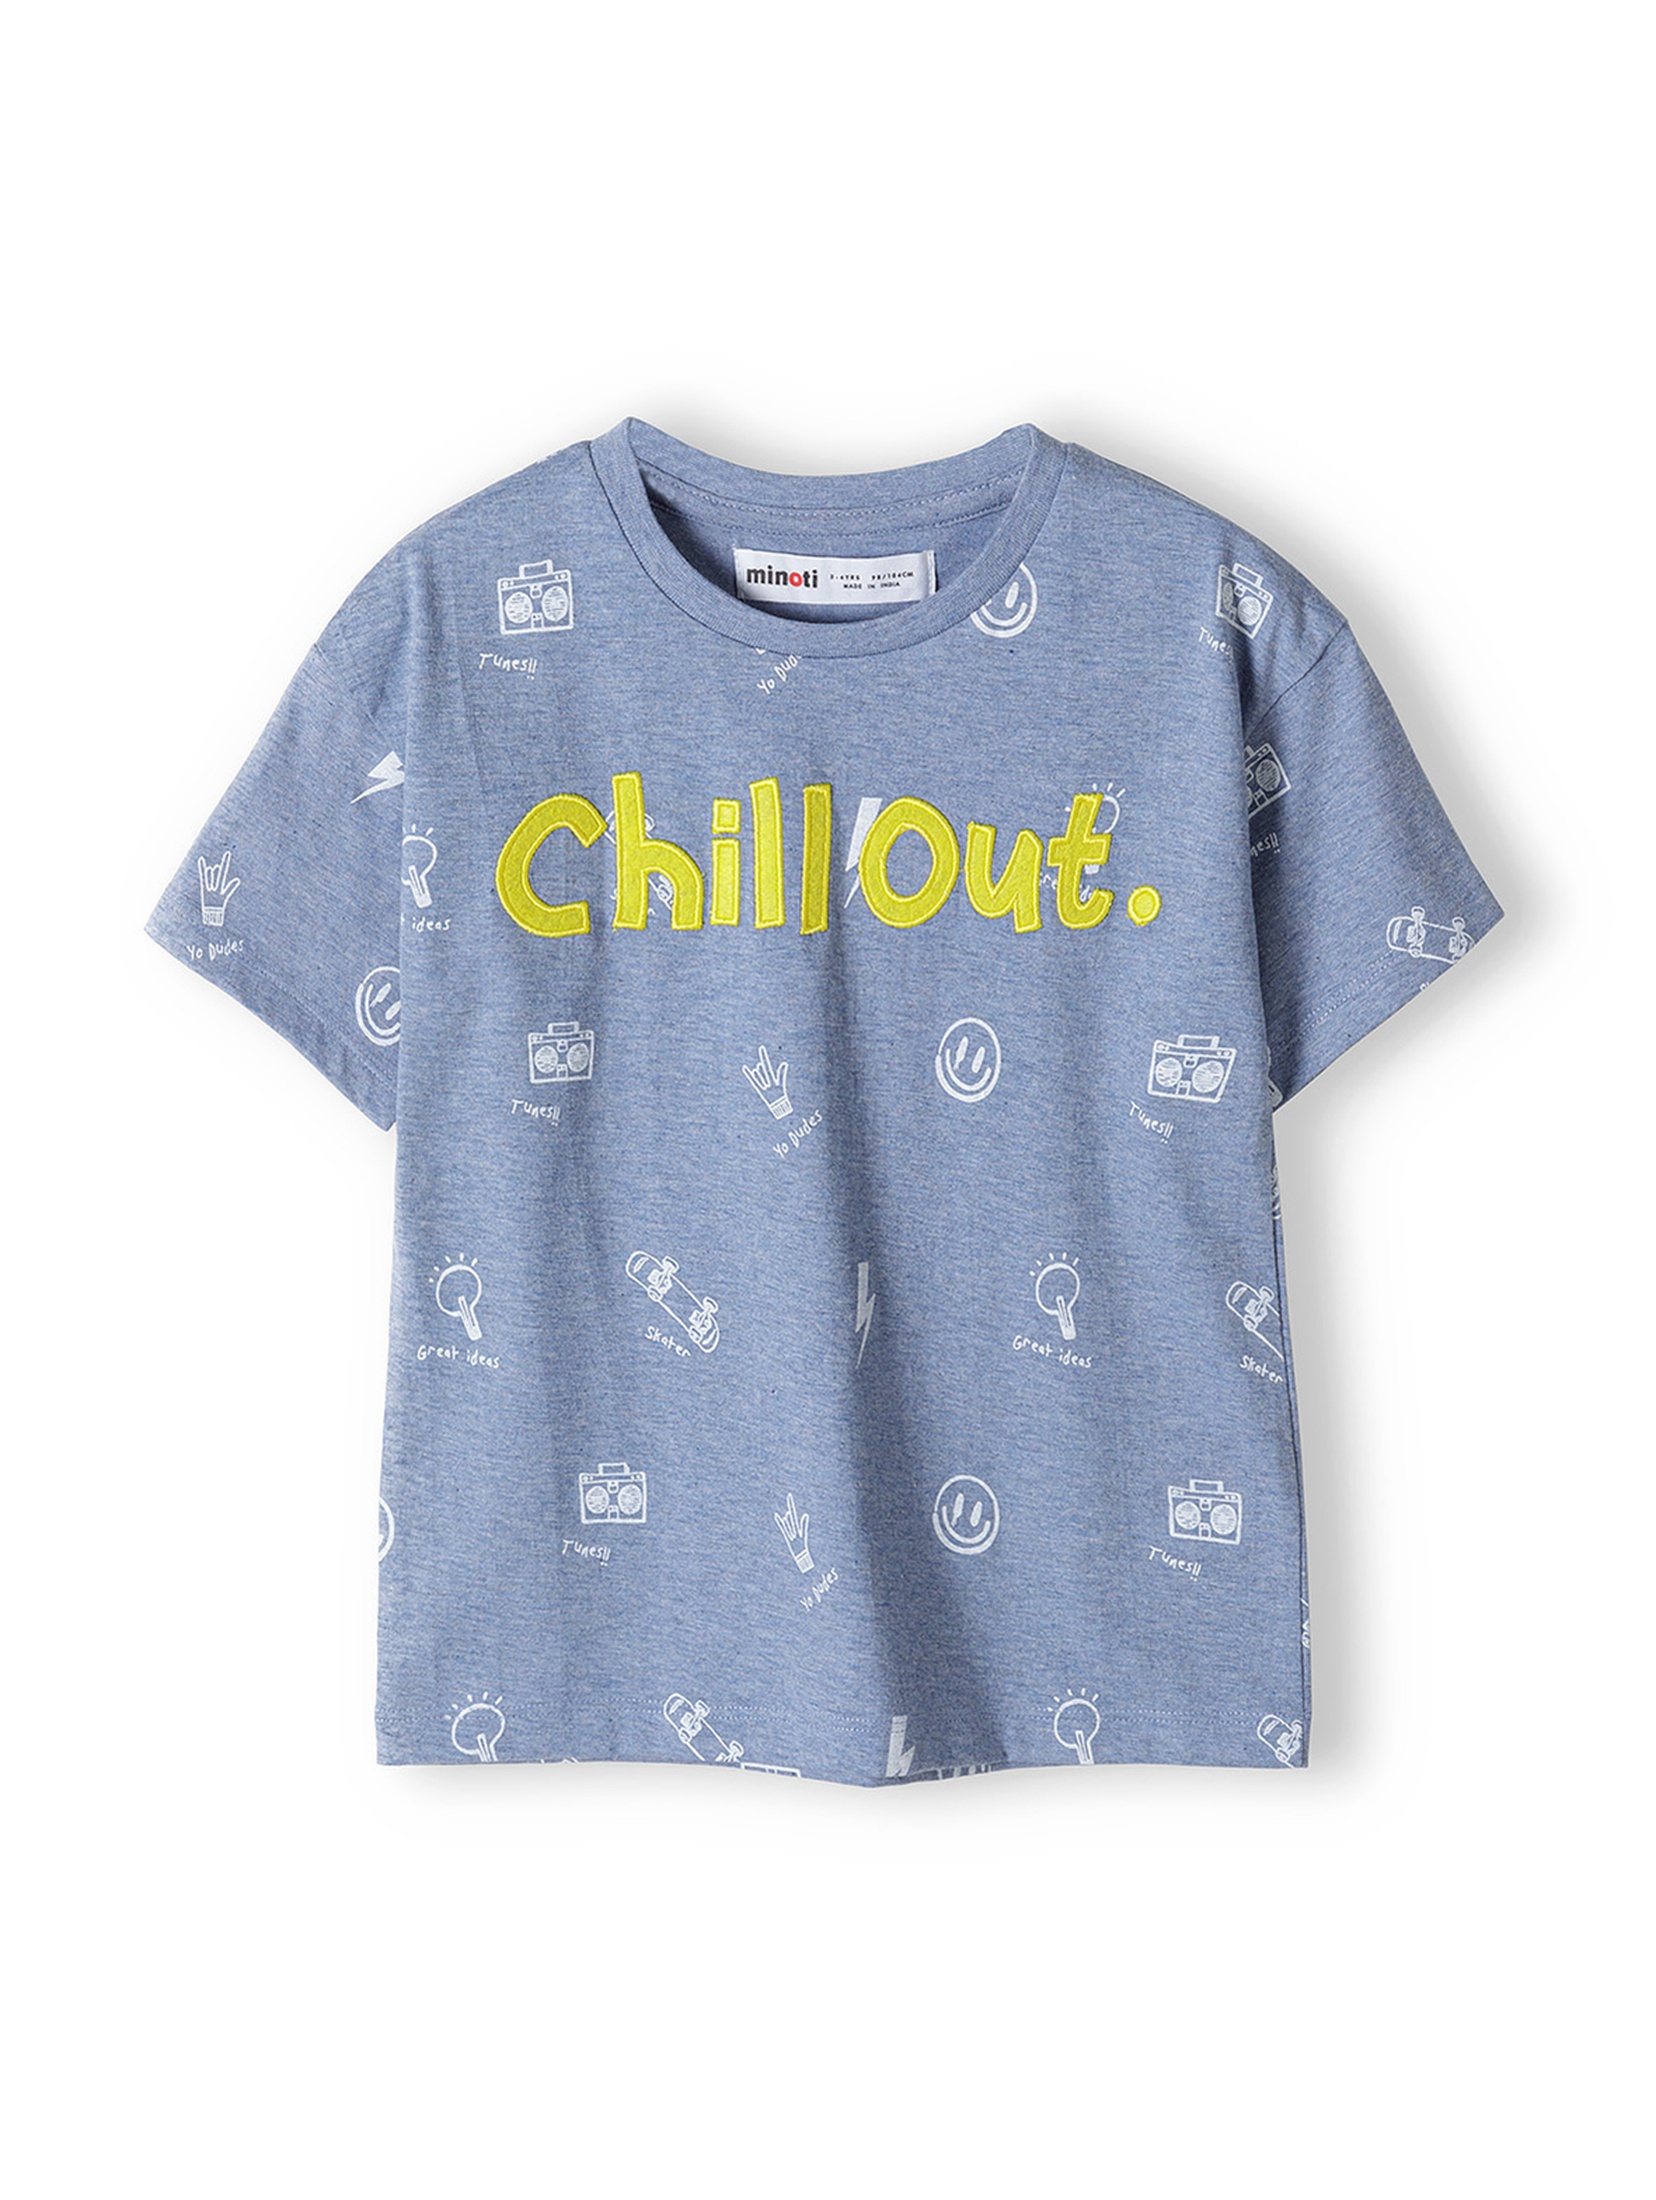 Niebieski t-shirt dzianinowy dla niemowlaka- Chillout